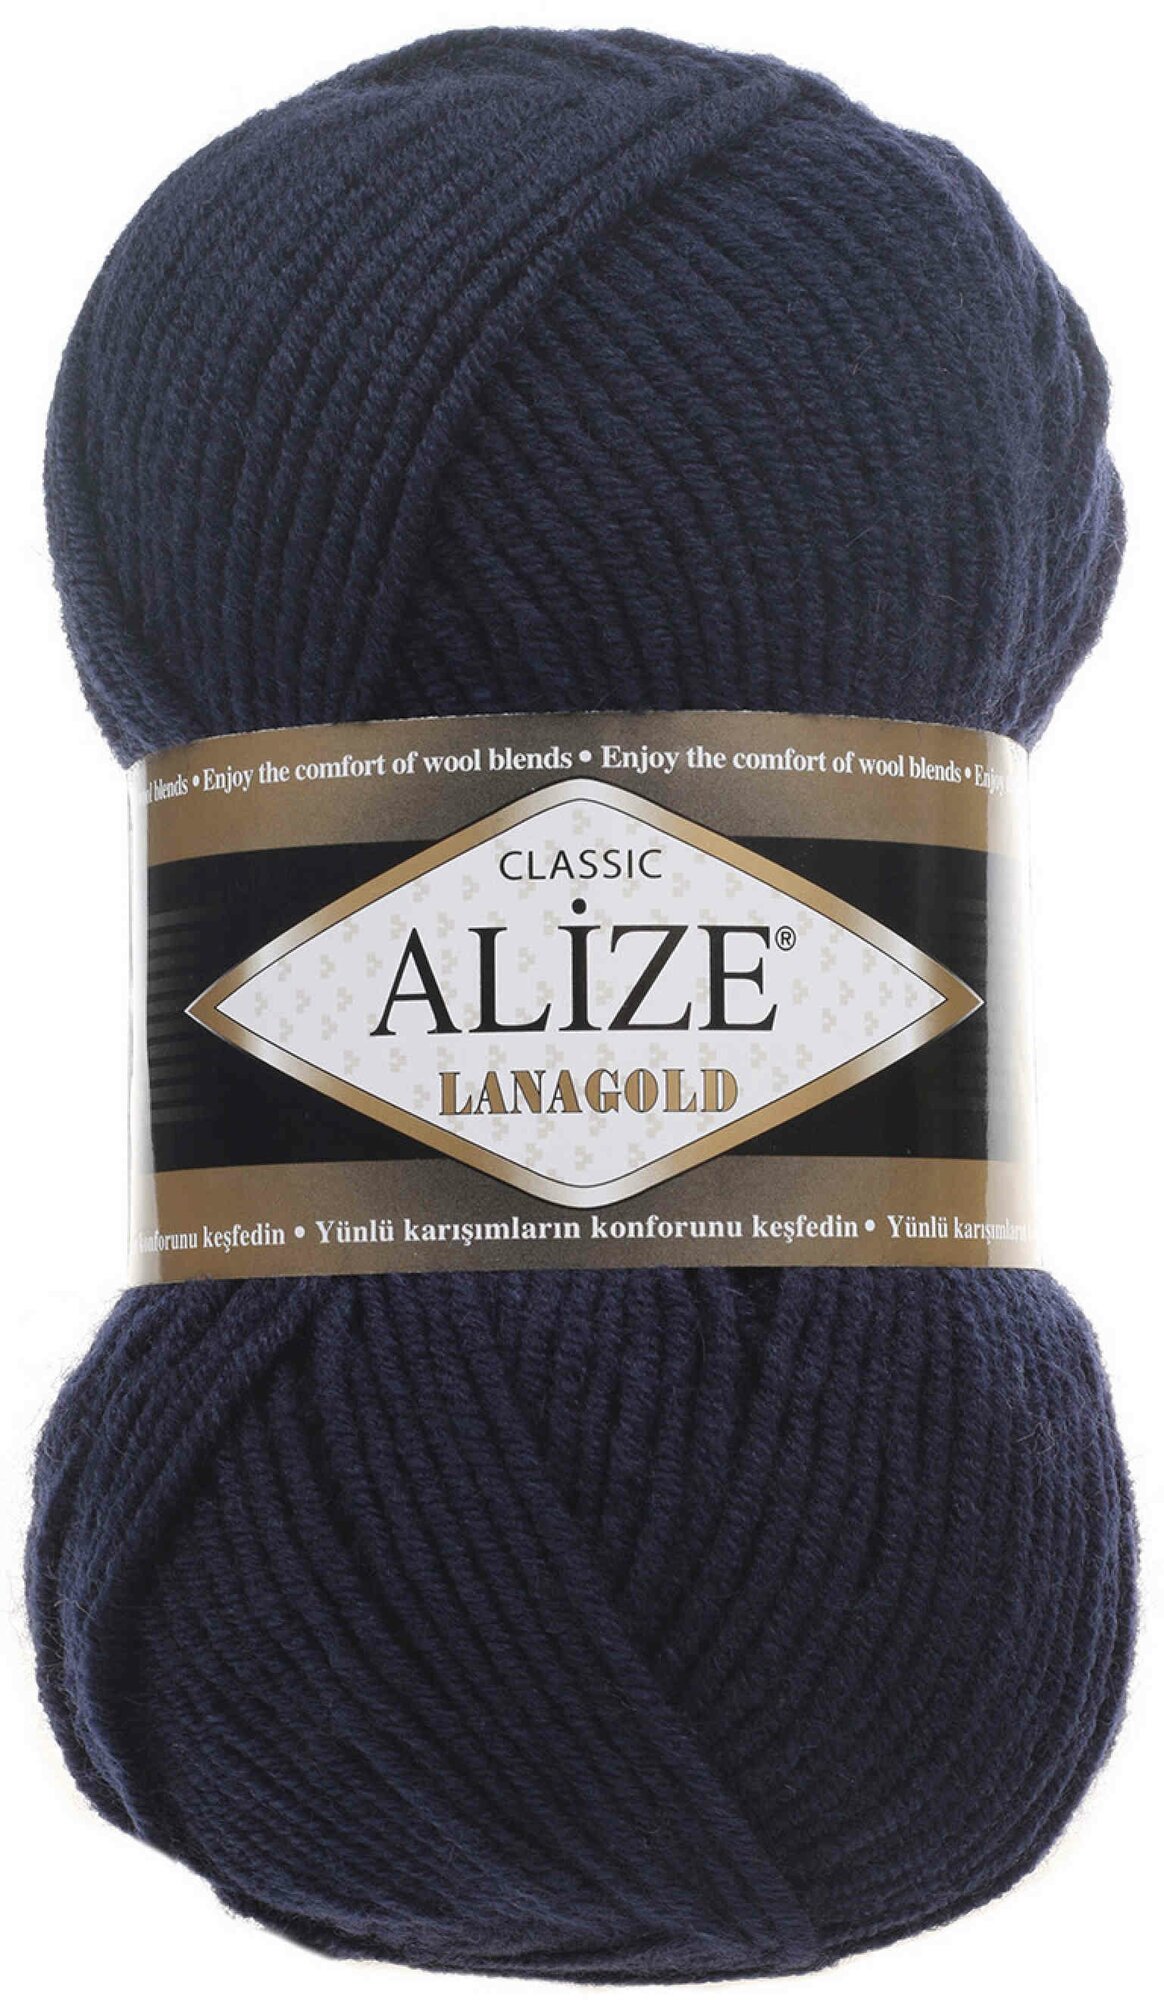 Пряжа Alize Lanagold темно-синий (58), 51%акрил/49%шерсть, 240м, 100г, 2шт